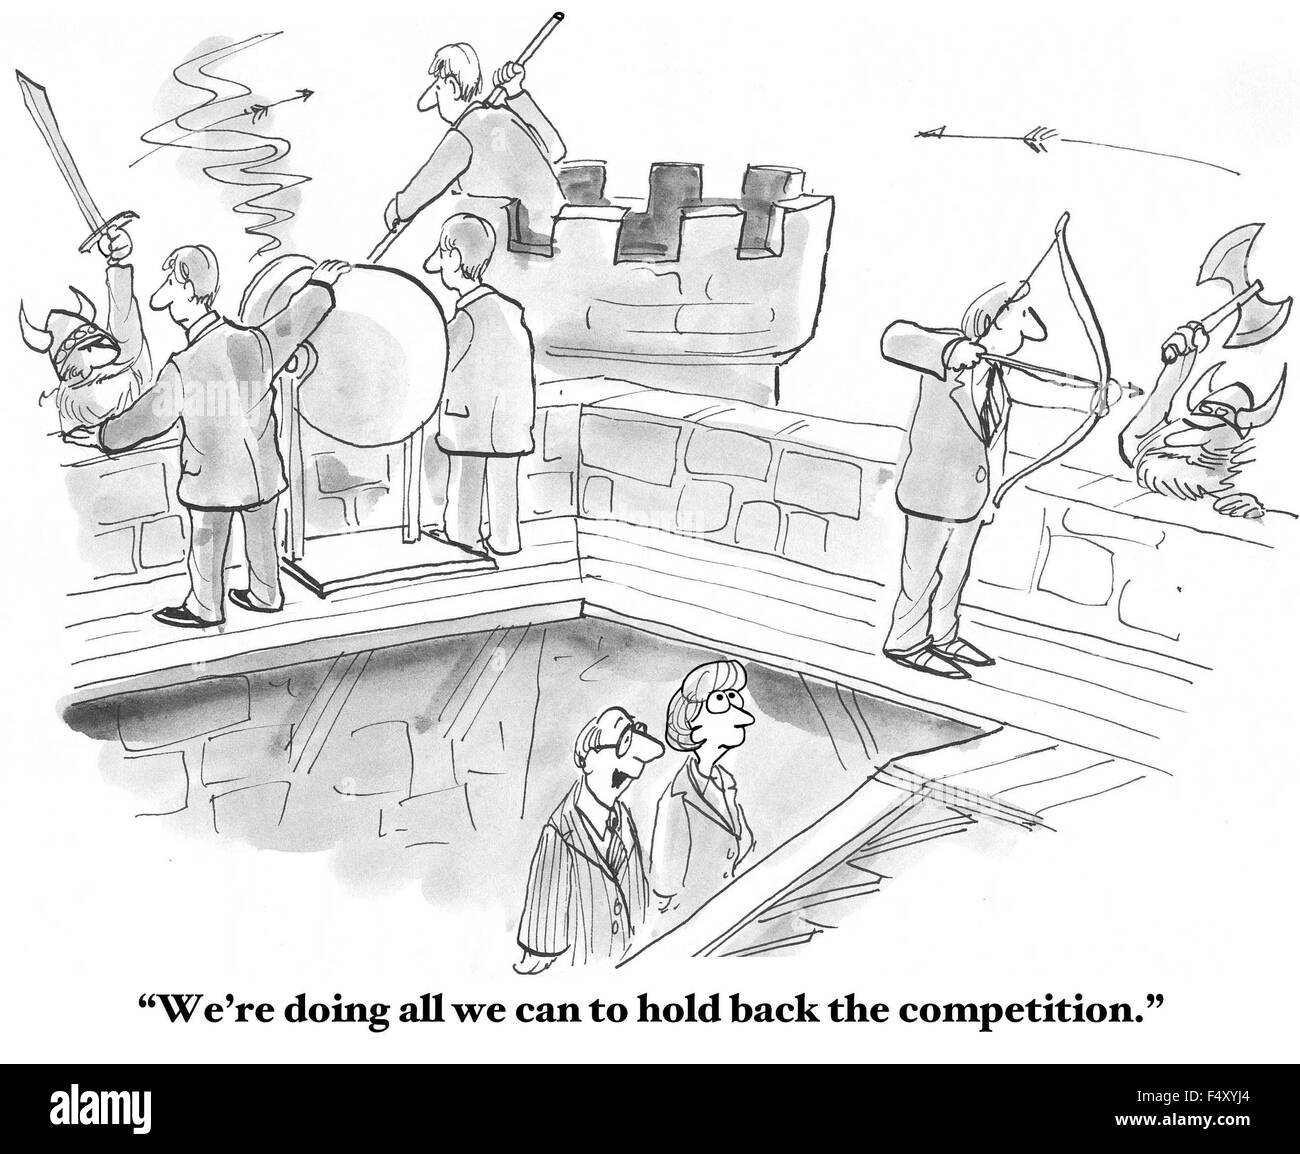 Business-Cartoon zeigt Geschäftsleute kämpfen Krieger, "Wir tun alles, was, die wir, um den Wettbewerb zurückhalten können". Stockfoto